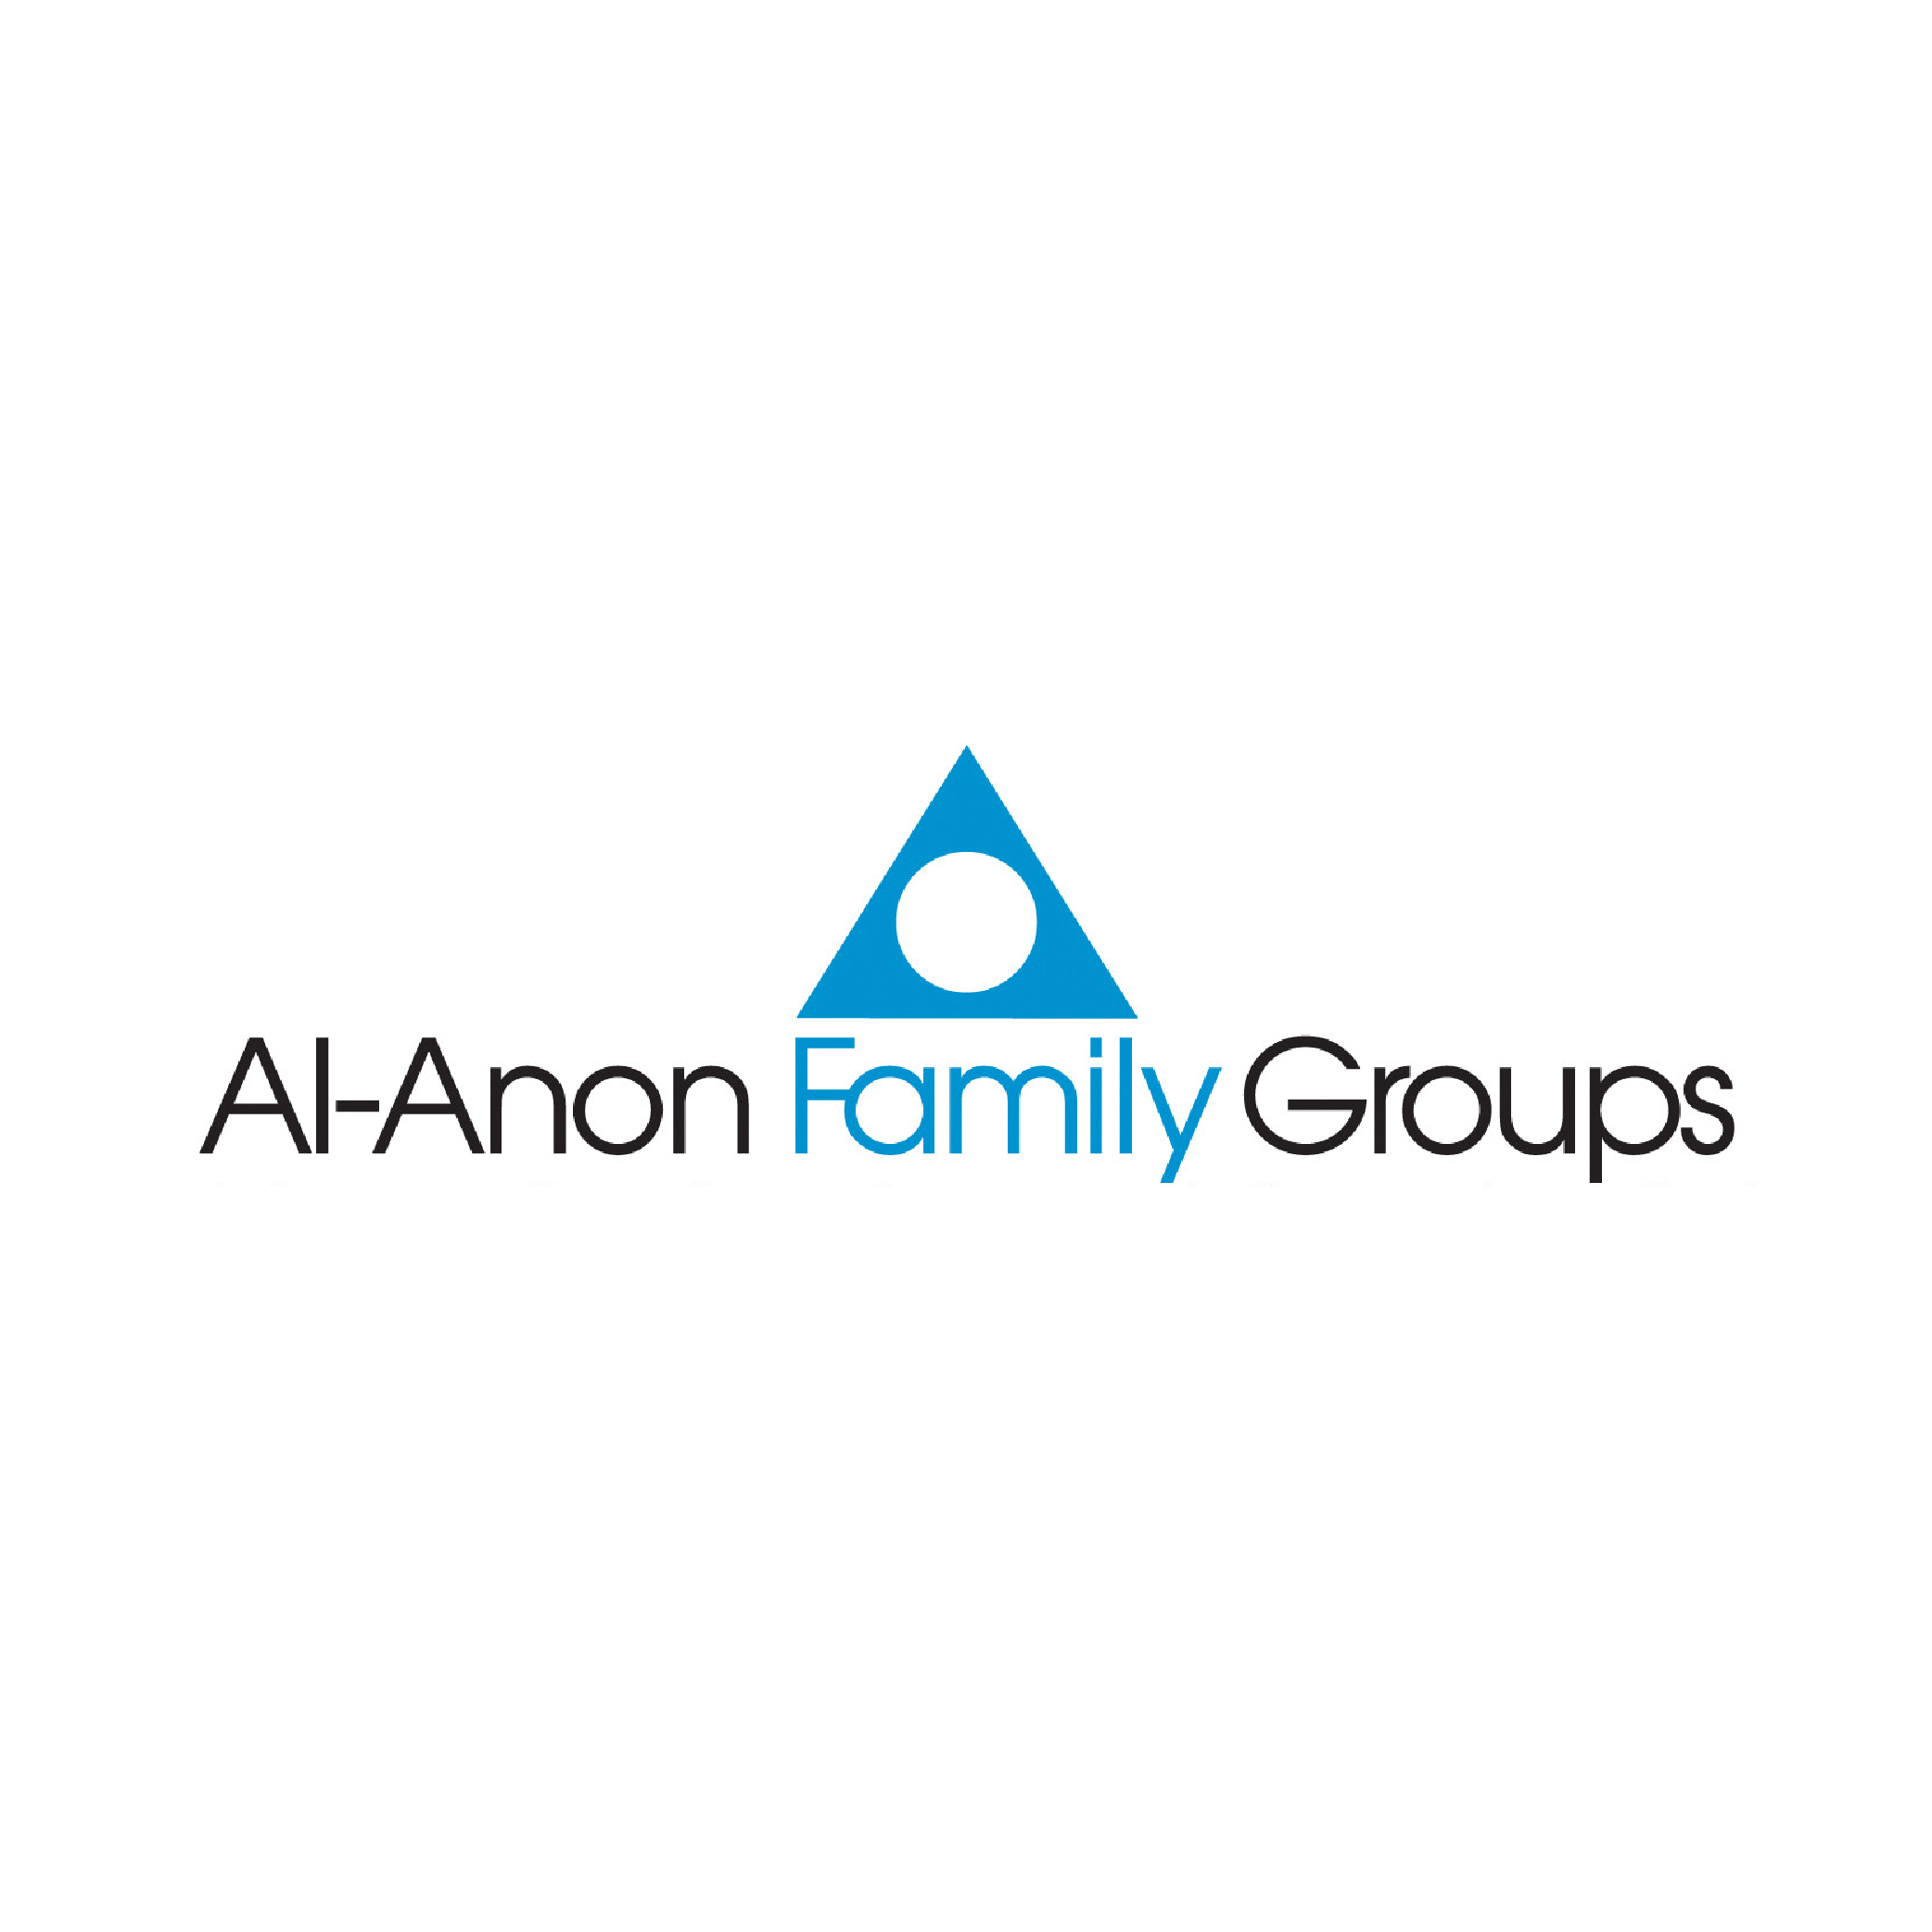 Logotipo de los Grupos de Familia Al-Anon